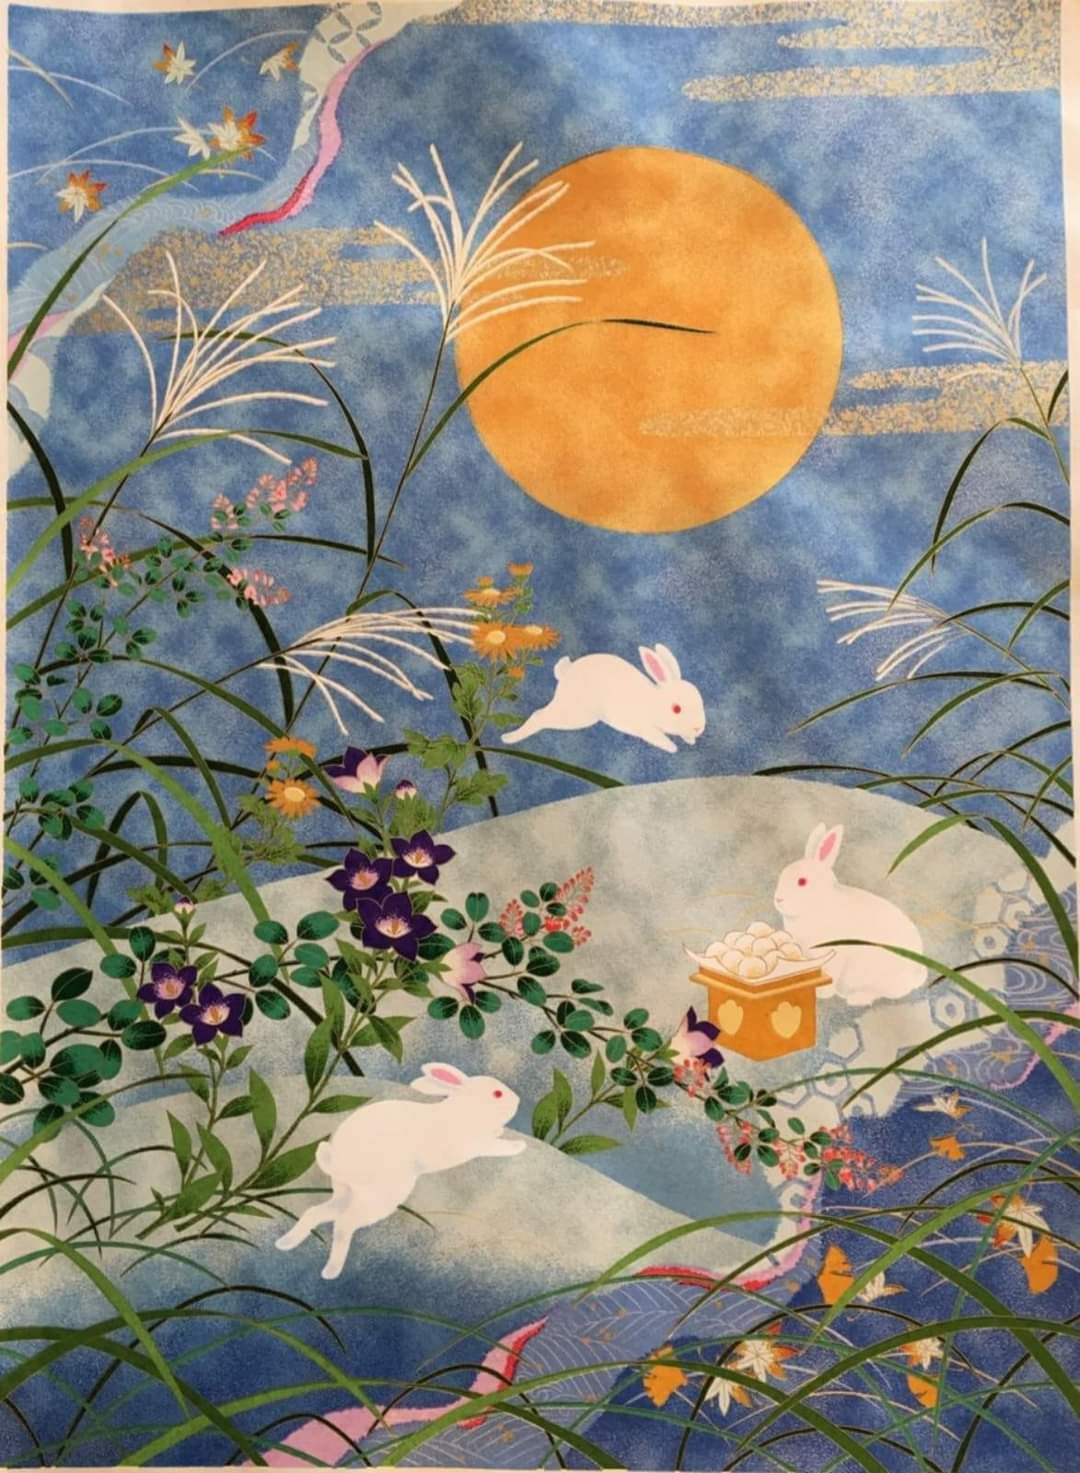 Predavanje Godina Zeca- simbolika Meseca i zeca u japanskoj umetnosti i kulturi